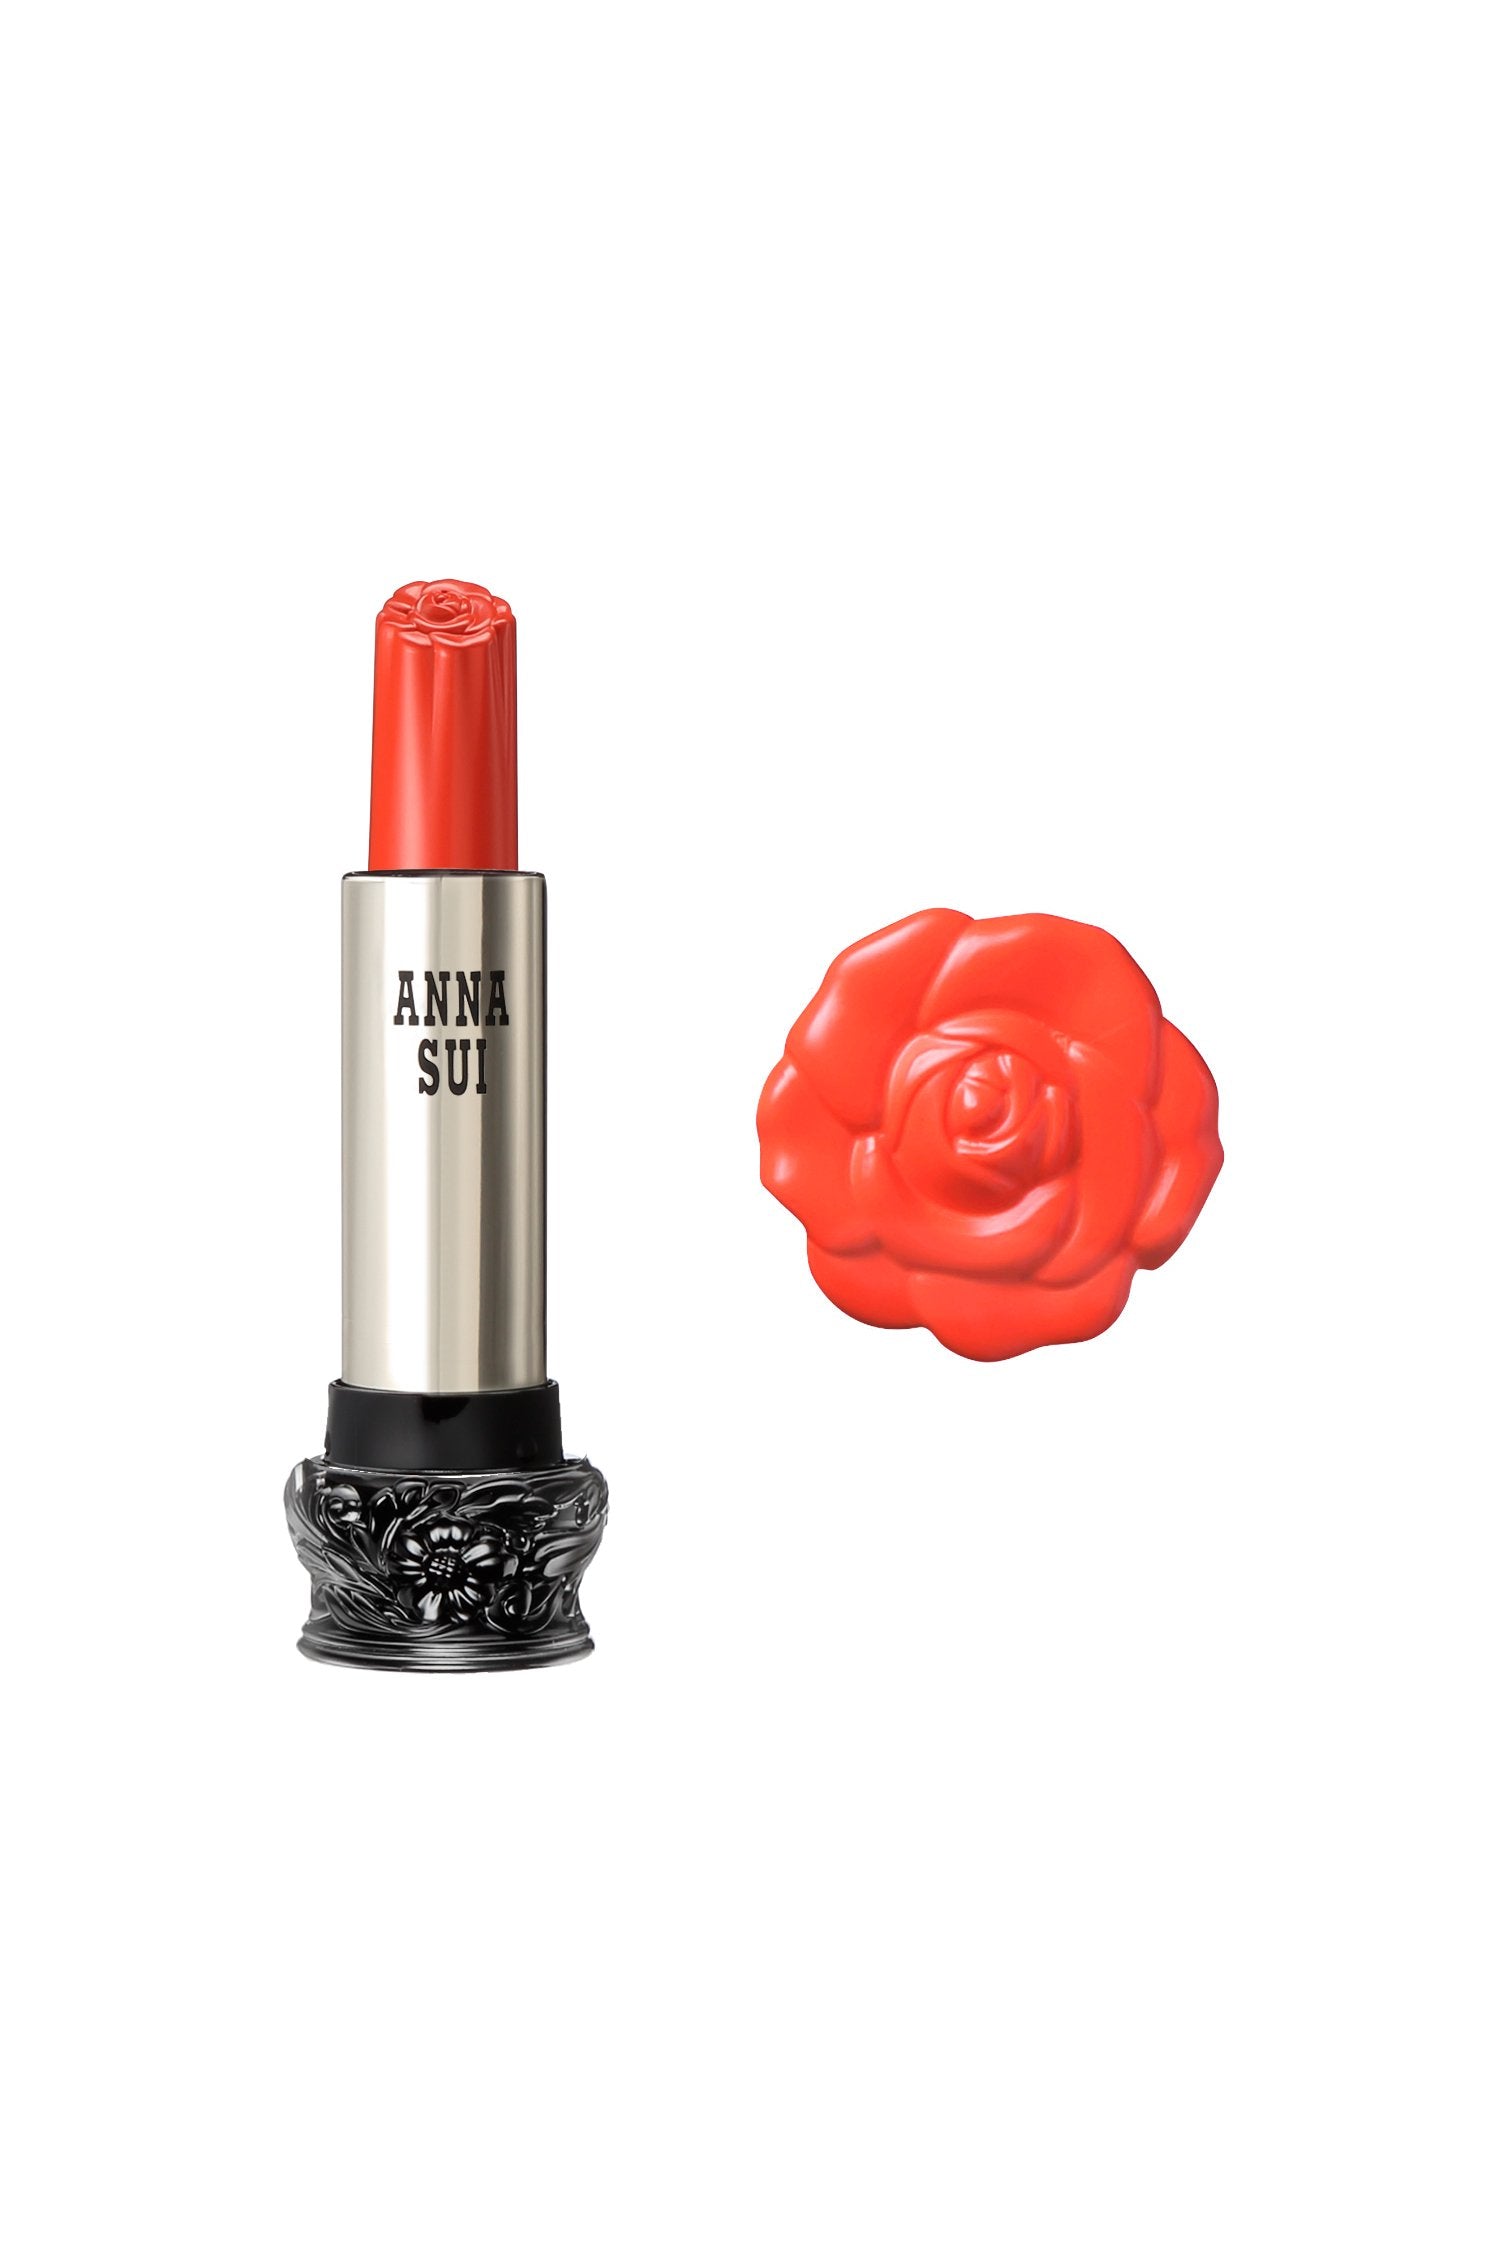 602 - Rouge à lèvres Bright Marigold F : Fairy Flower, dans un récipient cylindrique, large base noire, motif floral gravé, corps métallique